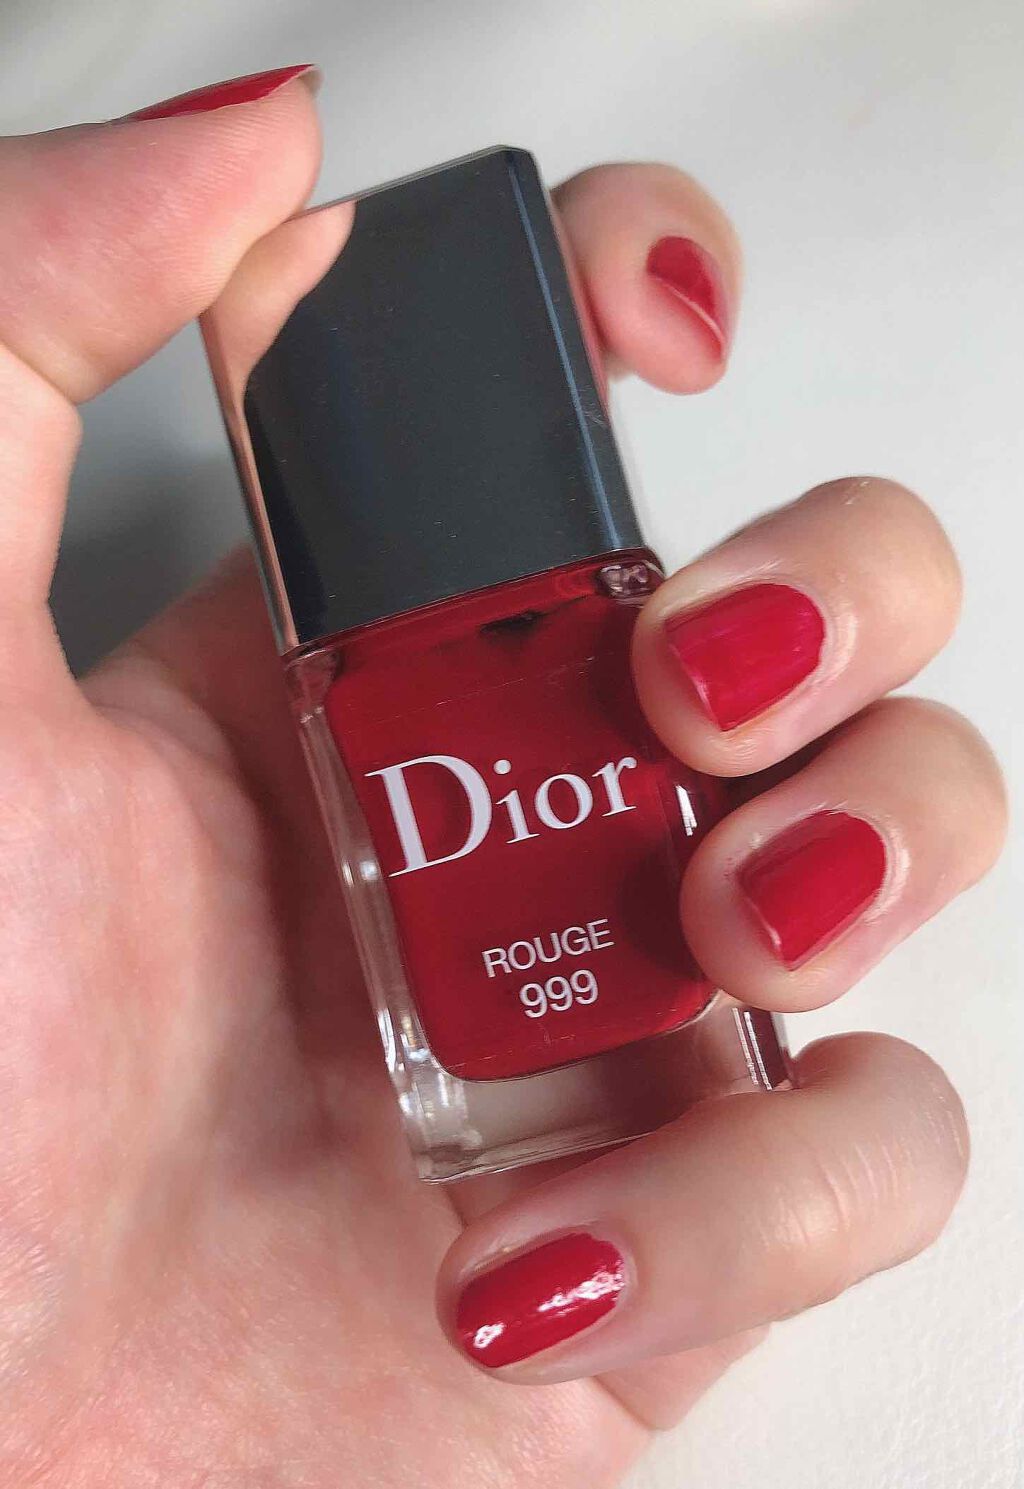 限定マニキュア ディオール ヴェルニ Diorの口コミ Diorディオールヴェルニ Rouge99 By うみ 乾燥肌 30代前半 Lips